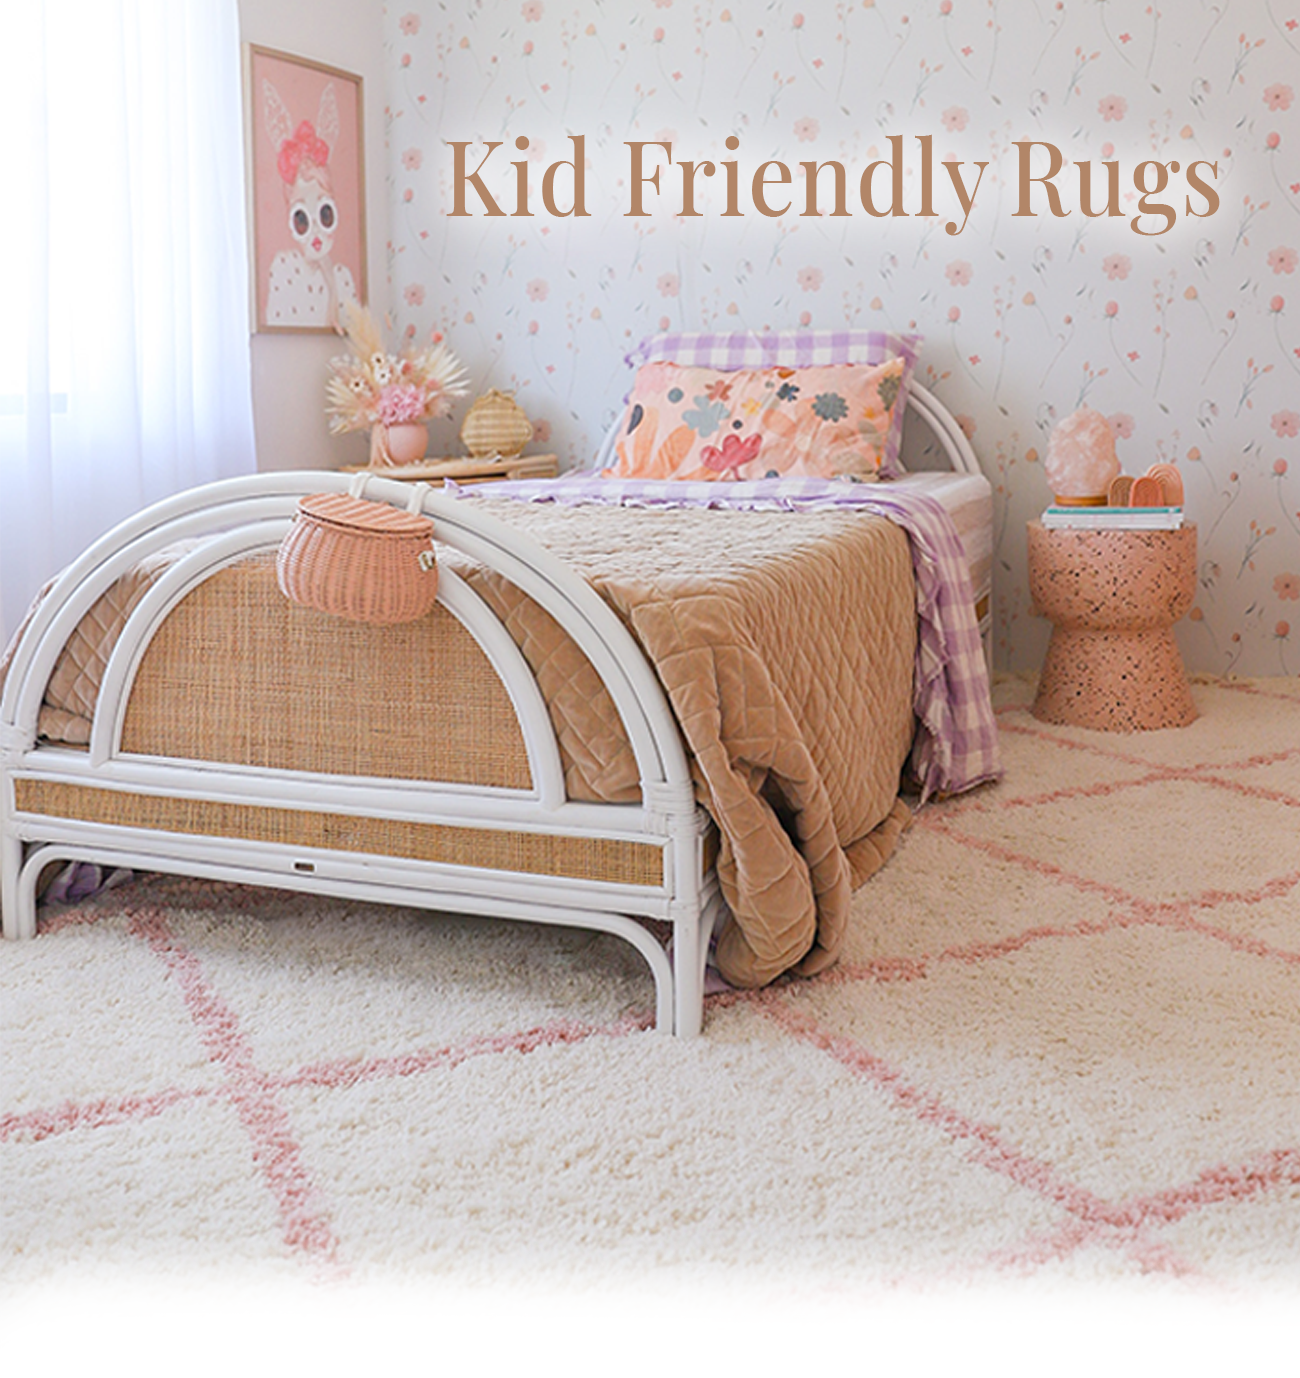 Kid friendly rugs